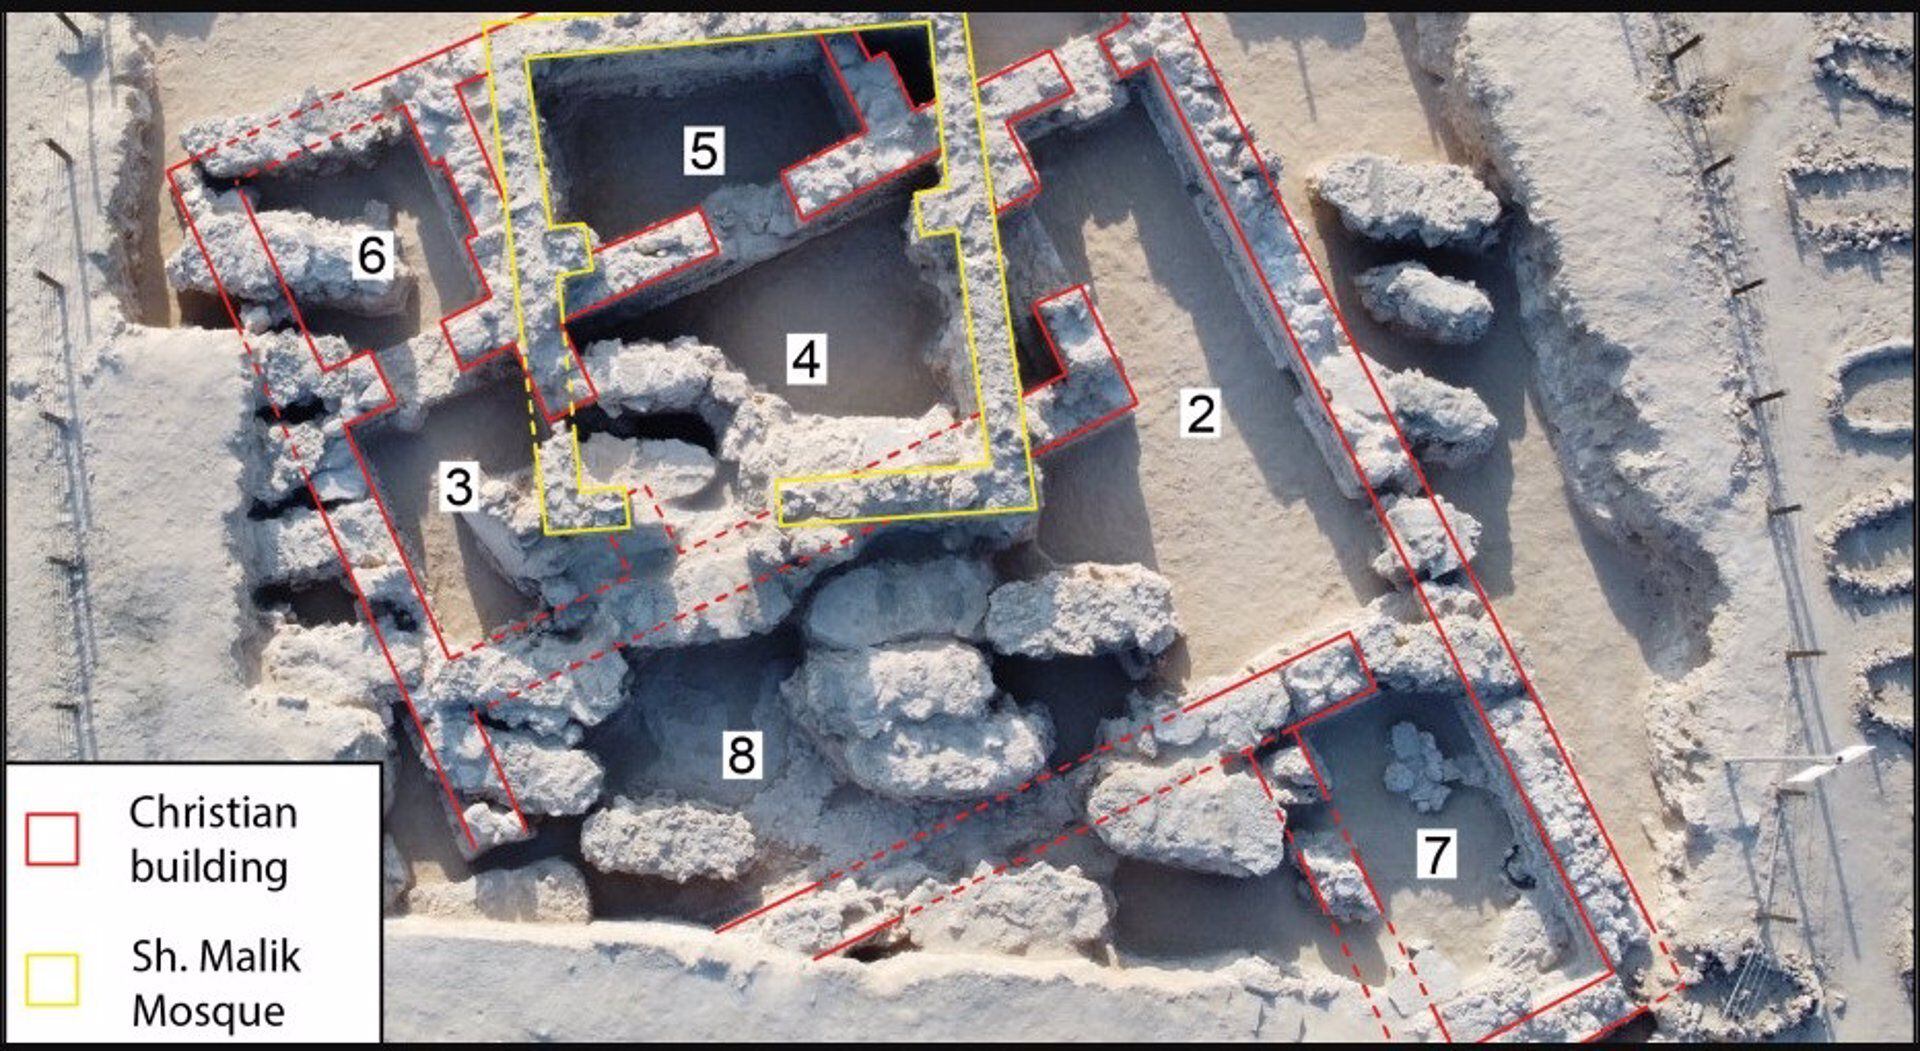 Insólitas ruinas cristianas descubiertas en Bahrein.